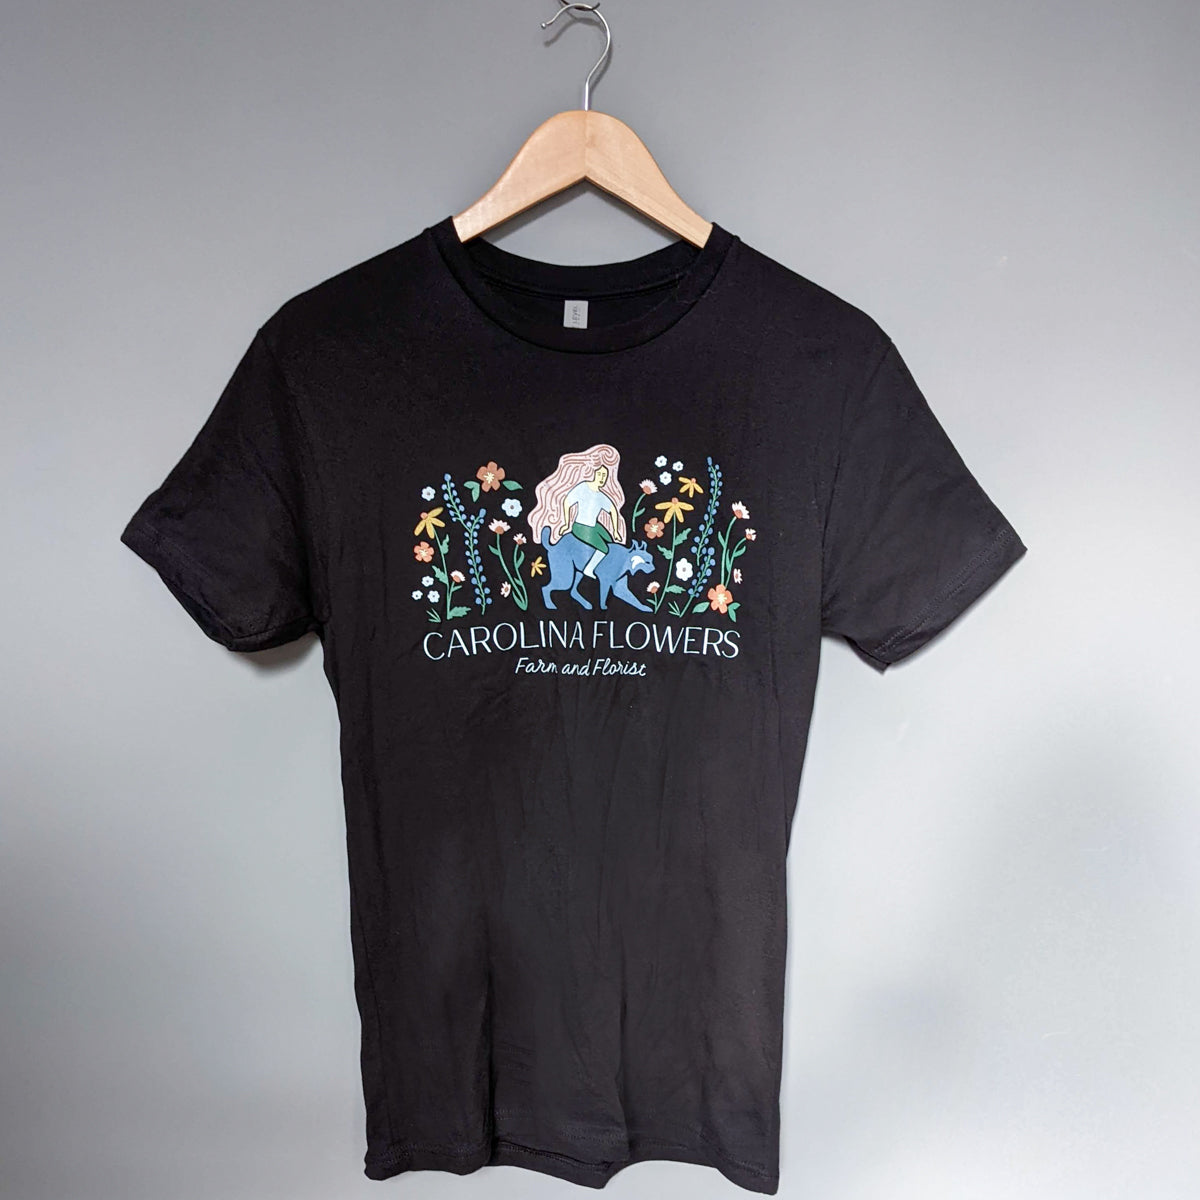 Unisex Black T-Shirt with Carolina Flowers Logo